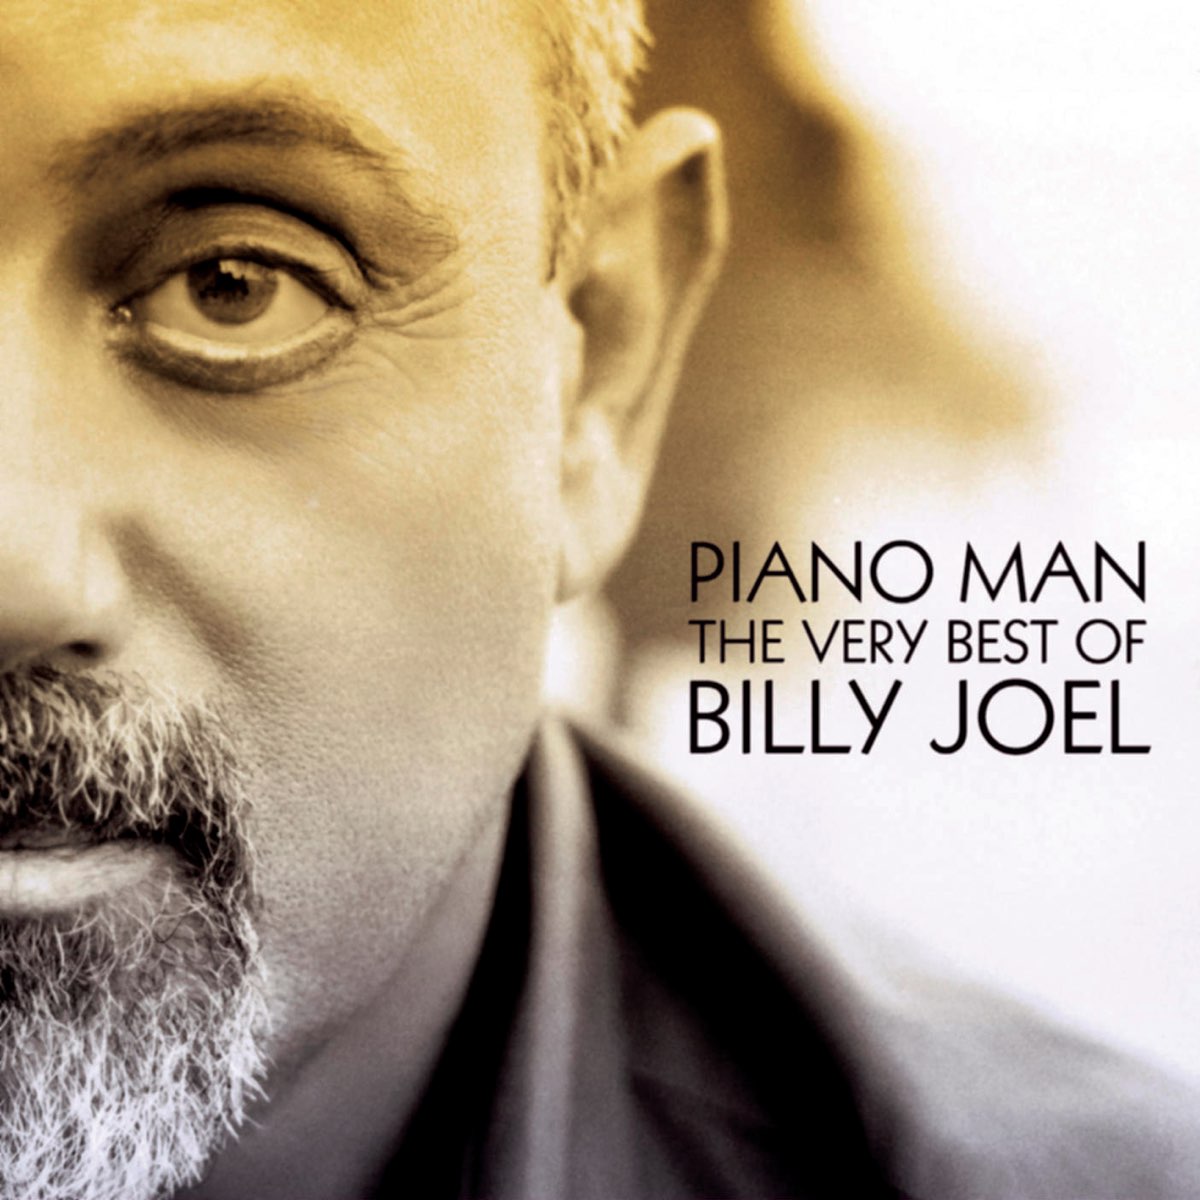 Piano Man - The Very Best of Billy Joel de Billy Joel en Apple Music